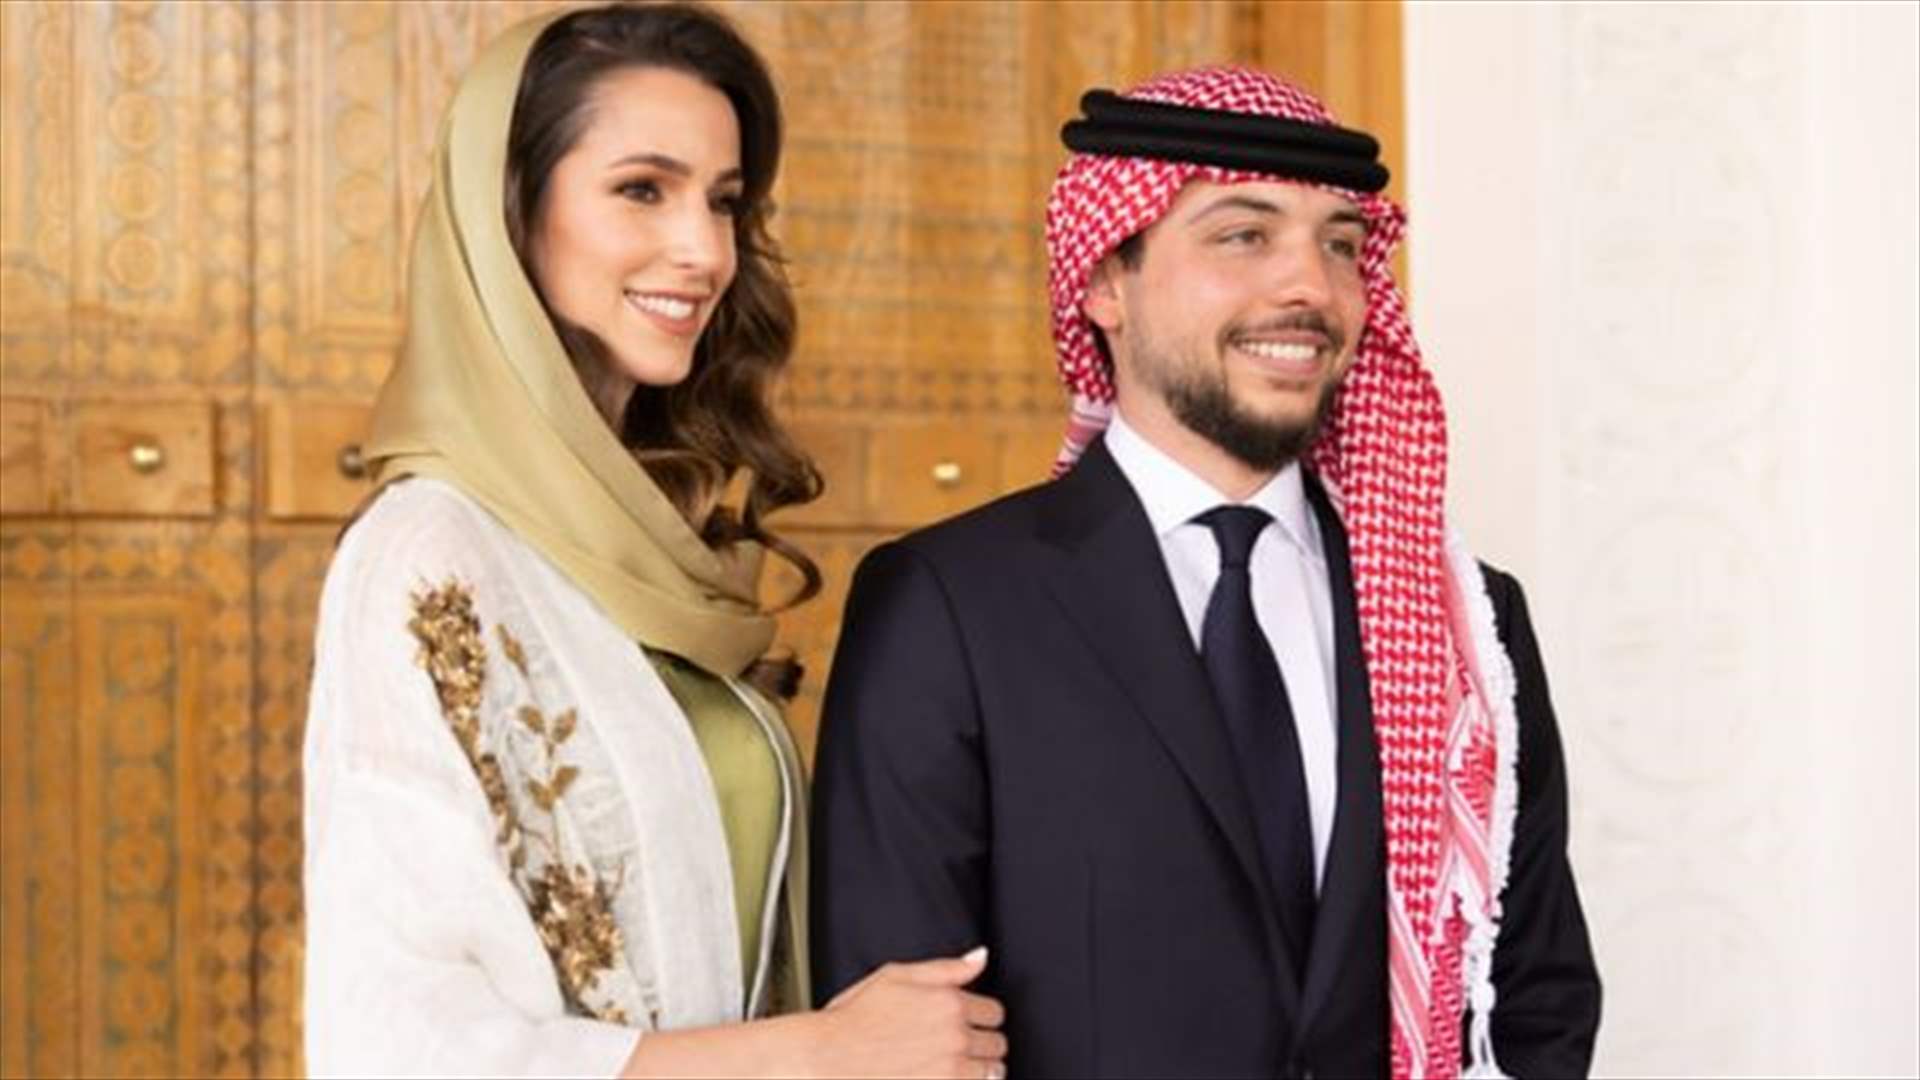 &quot;أجمل فرحة هي التي تشاركها مع من تحبهم ويحبونك&quot;... رسالة مؤثرة من الأمير حسين في يوم زفافه!